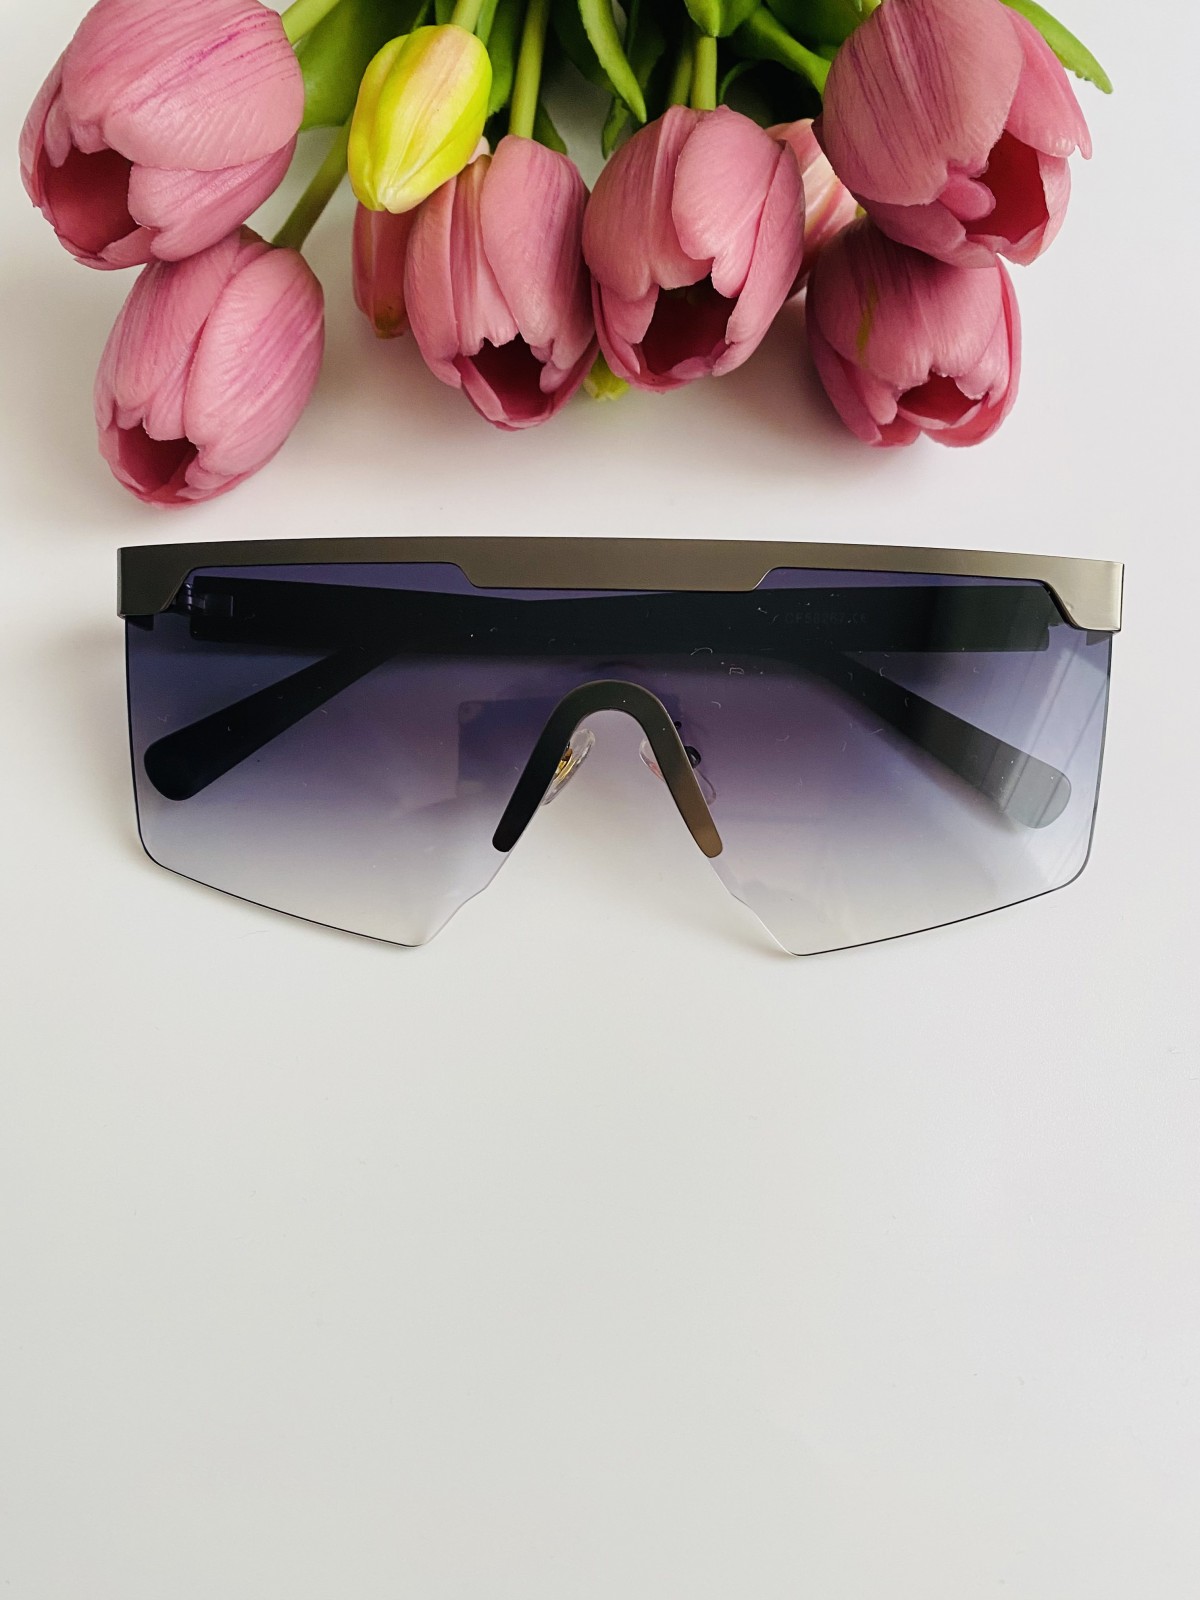 AVA okulary przeciwsłoneczne damskie - Model 6060